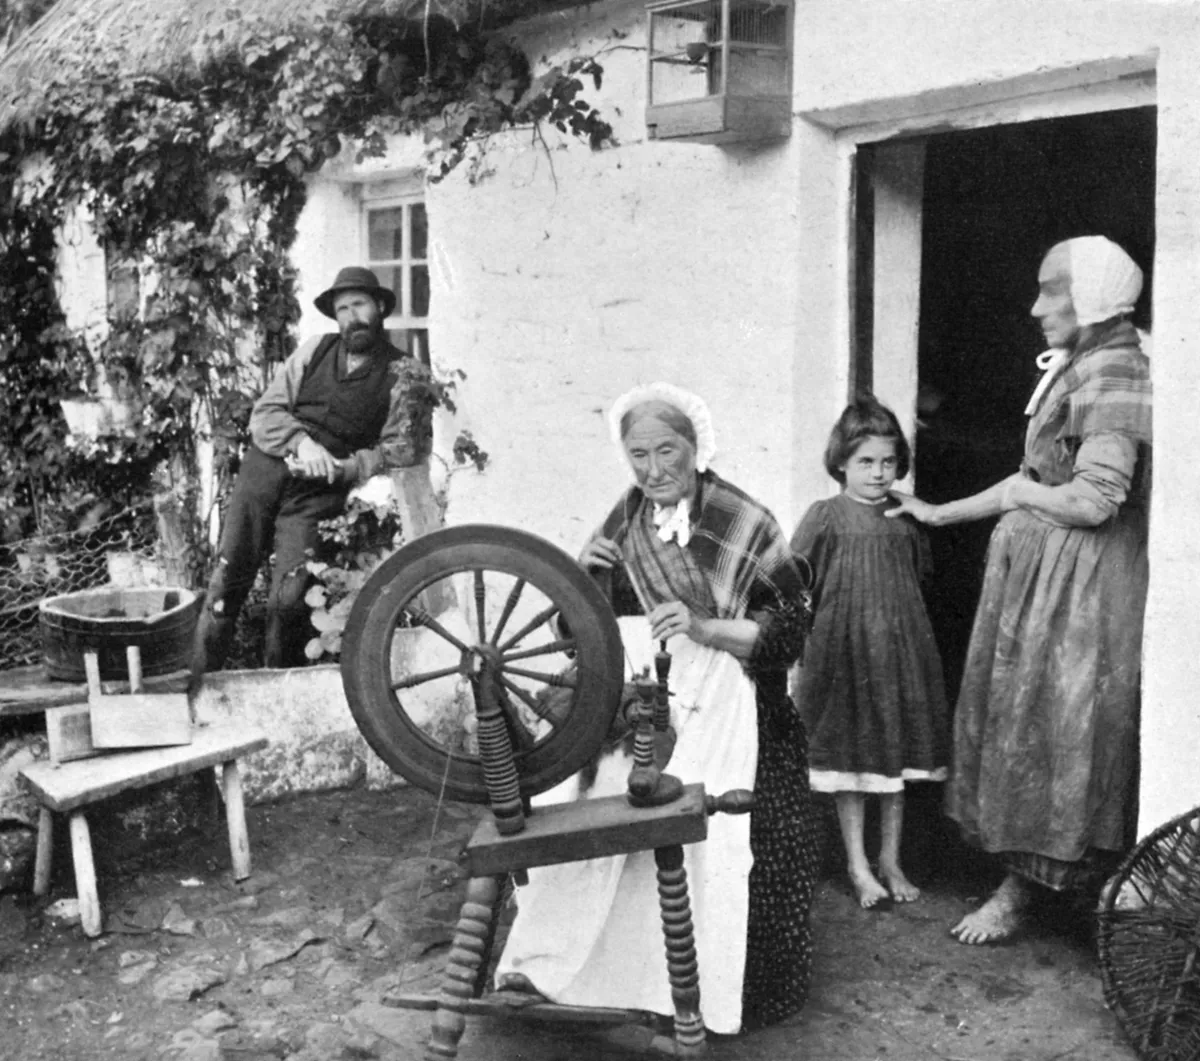 Spinning wool yarn, Cliffony, Sligo, 1908-1909.Artist: R Welch